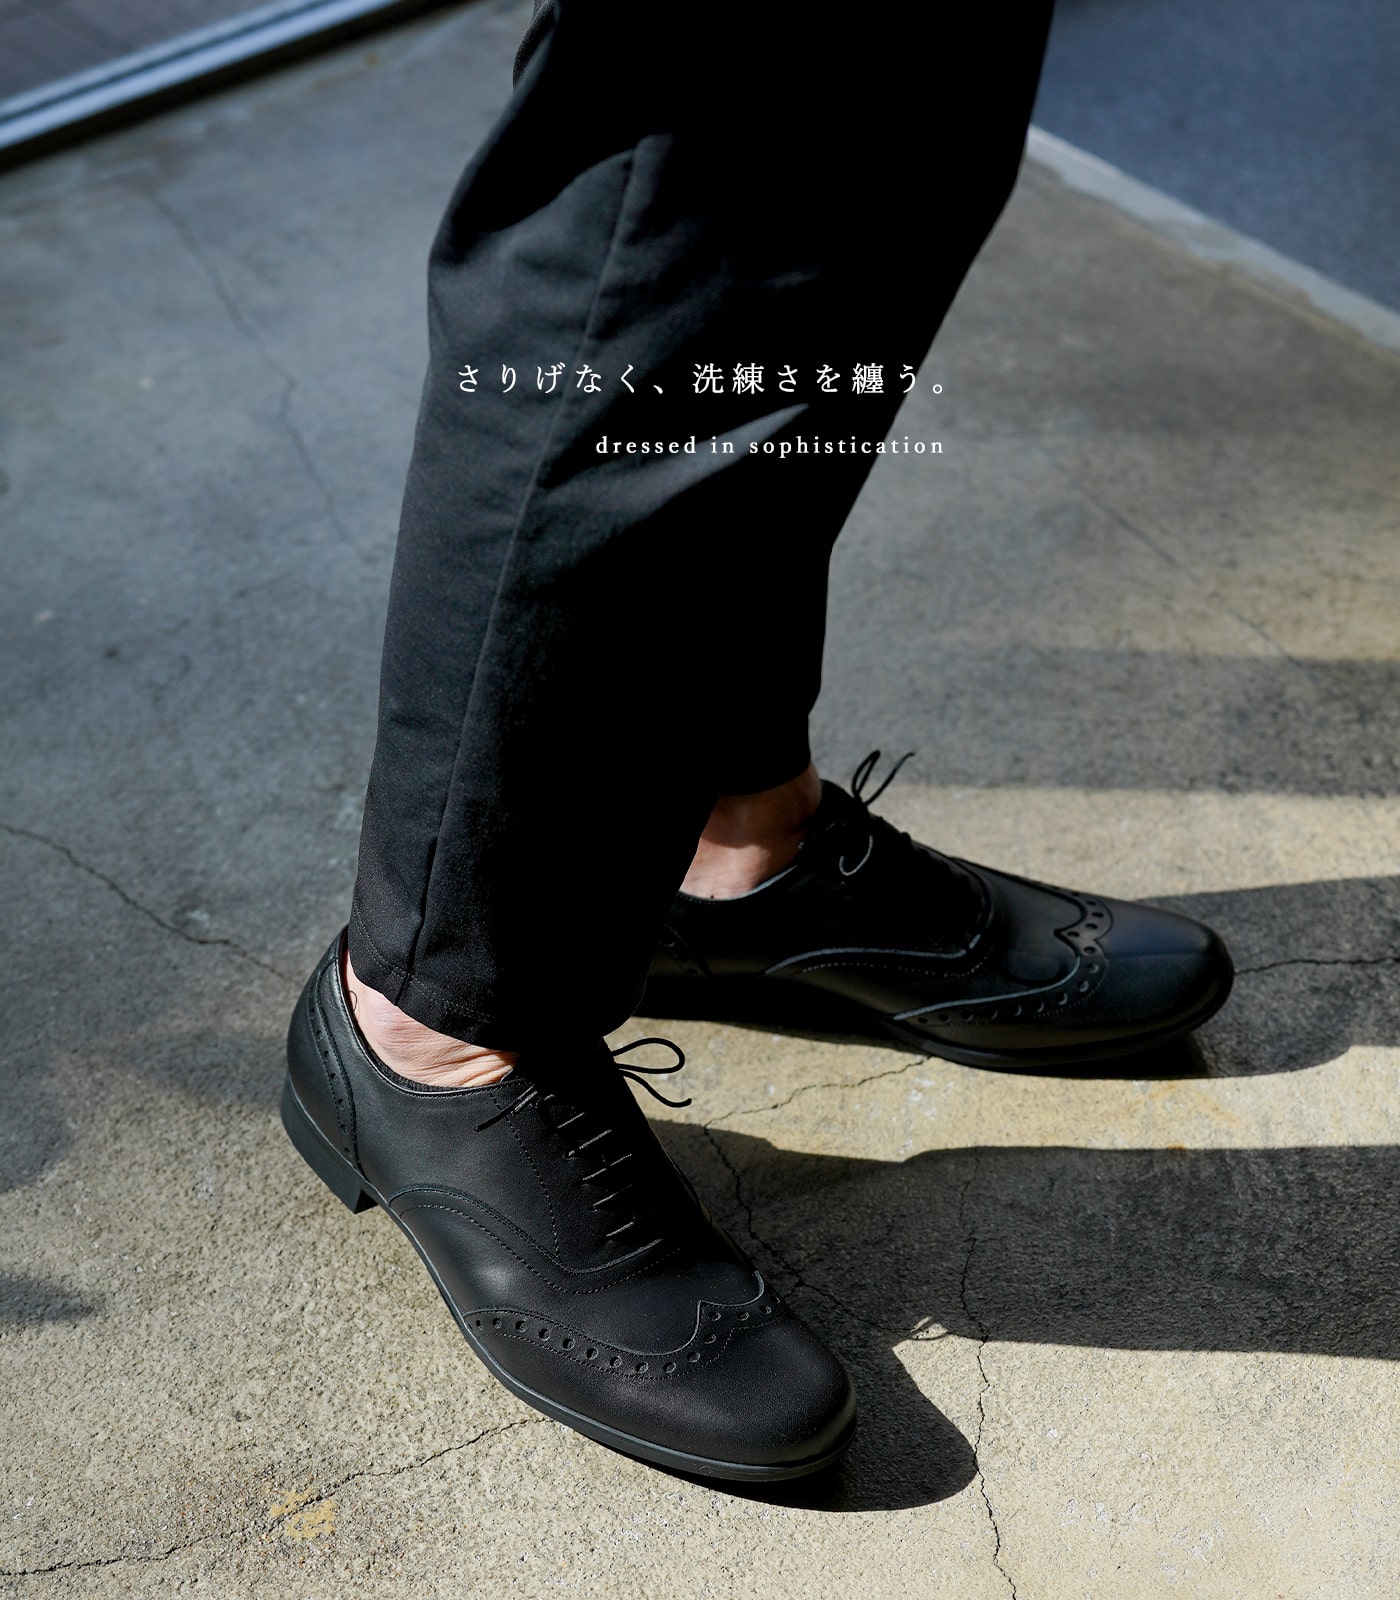 革靴 黒 メンズ ウイングチップ ブラック トラベルシューズ ショセ TRAVEL SHOES by chausser TR-004M BL  レビュー特典 ミニステインリムーバー